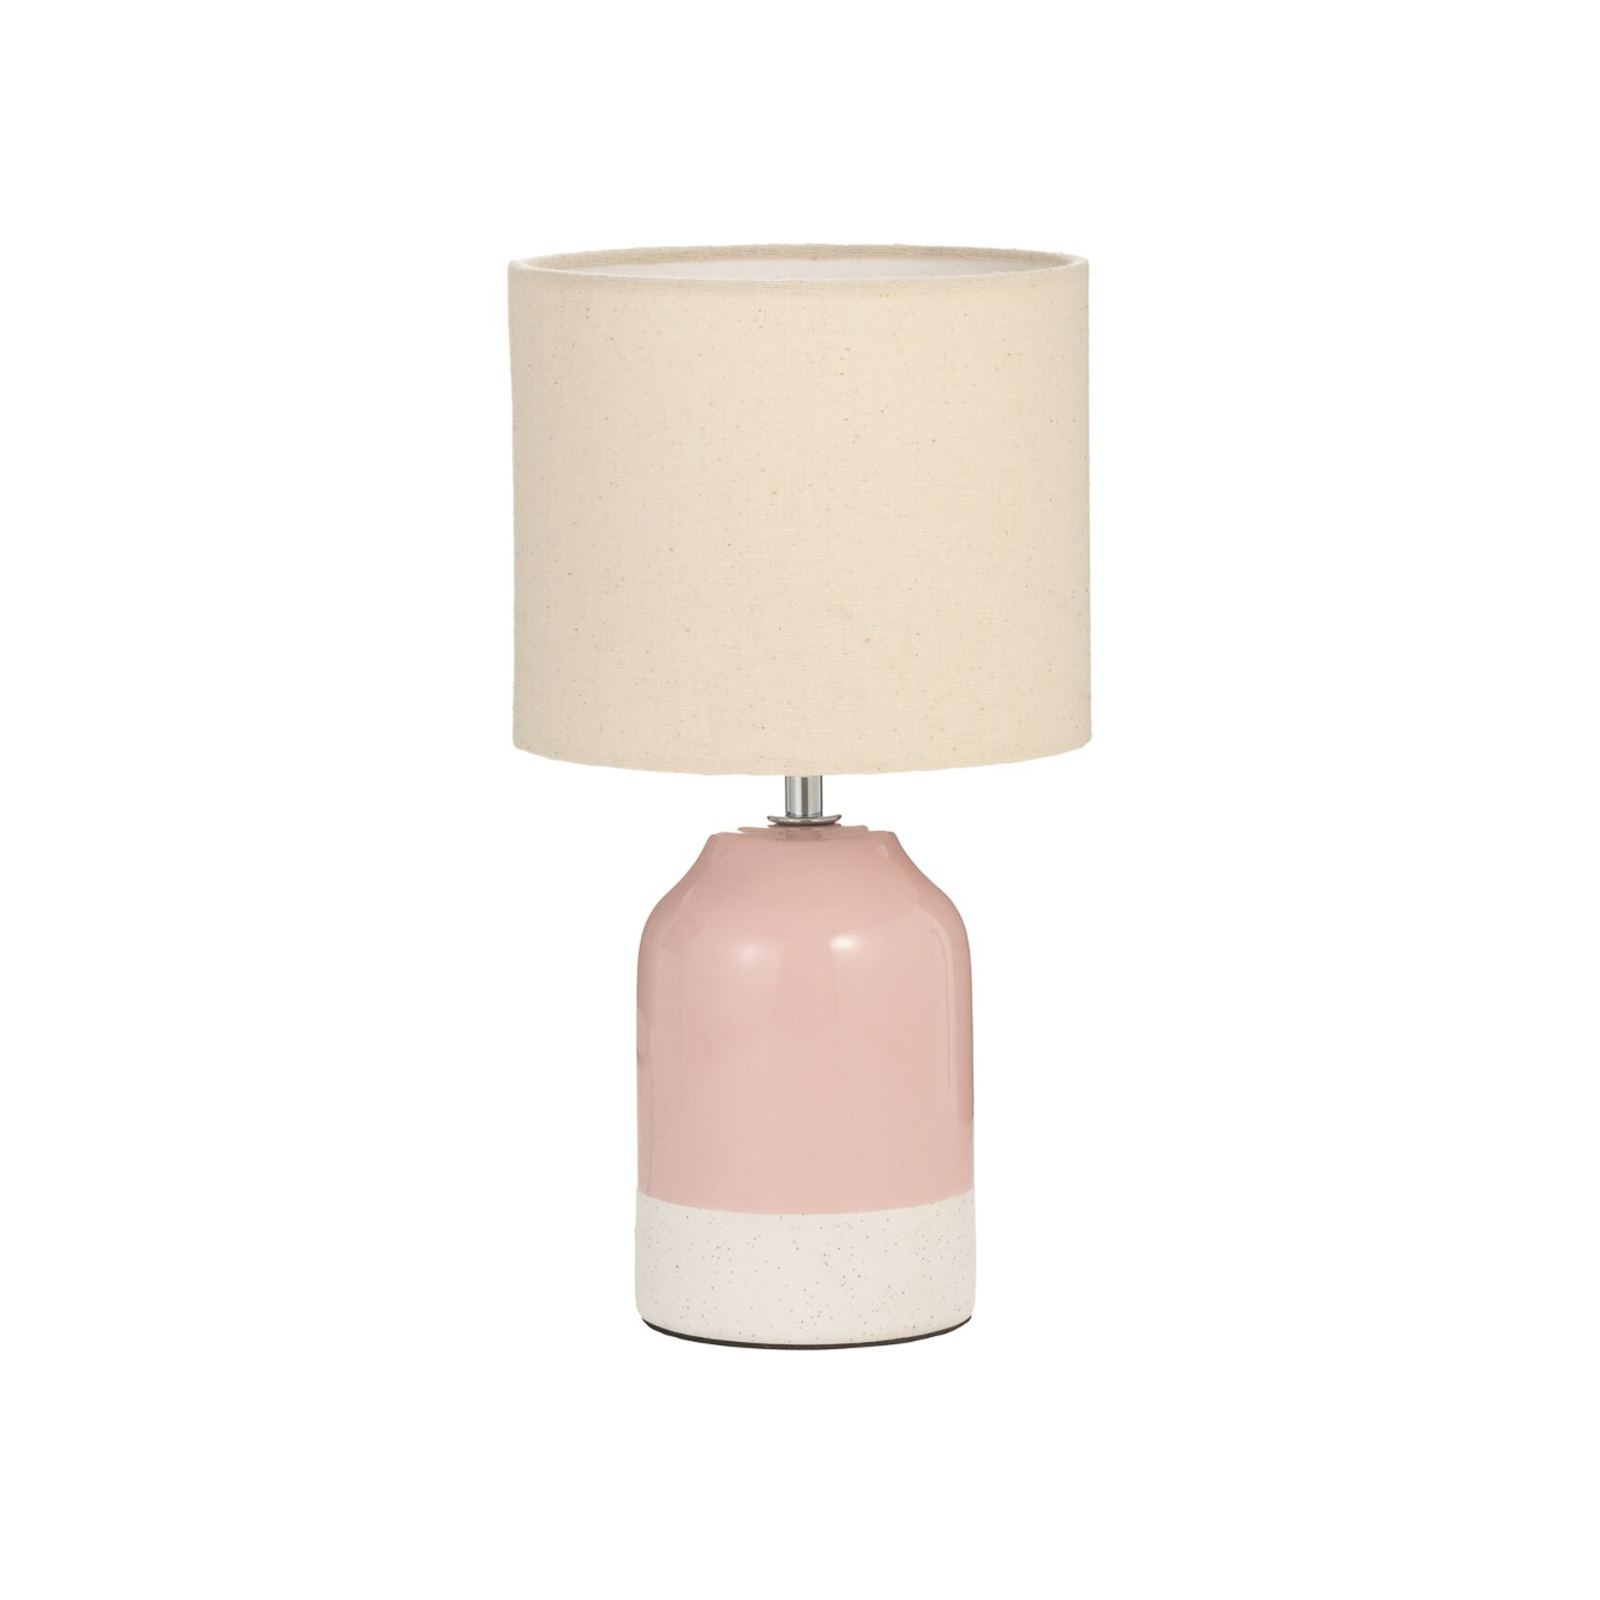 Pauleen Sandy Glow lampa stołowa, kremowa/różowa